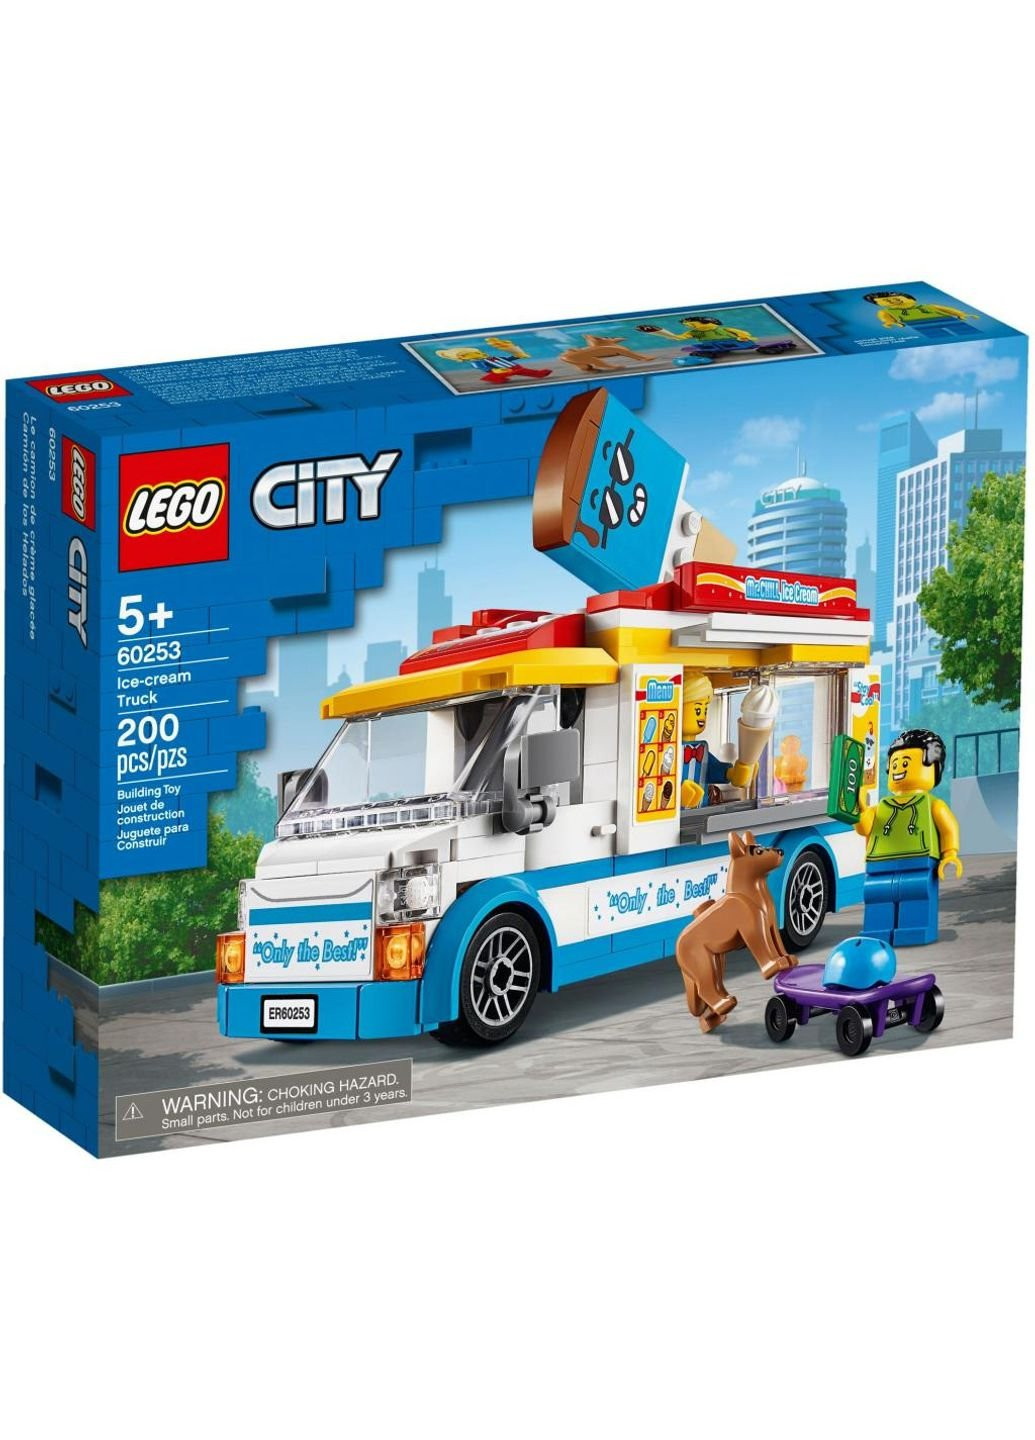 Конструктор ей (60253) Lego city great vehicles грузовик мороженщика 200 детал (198484488)